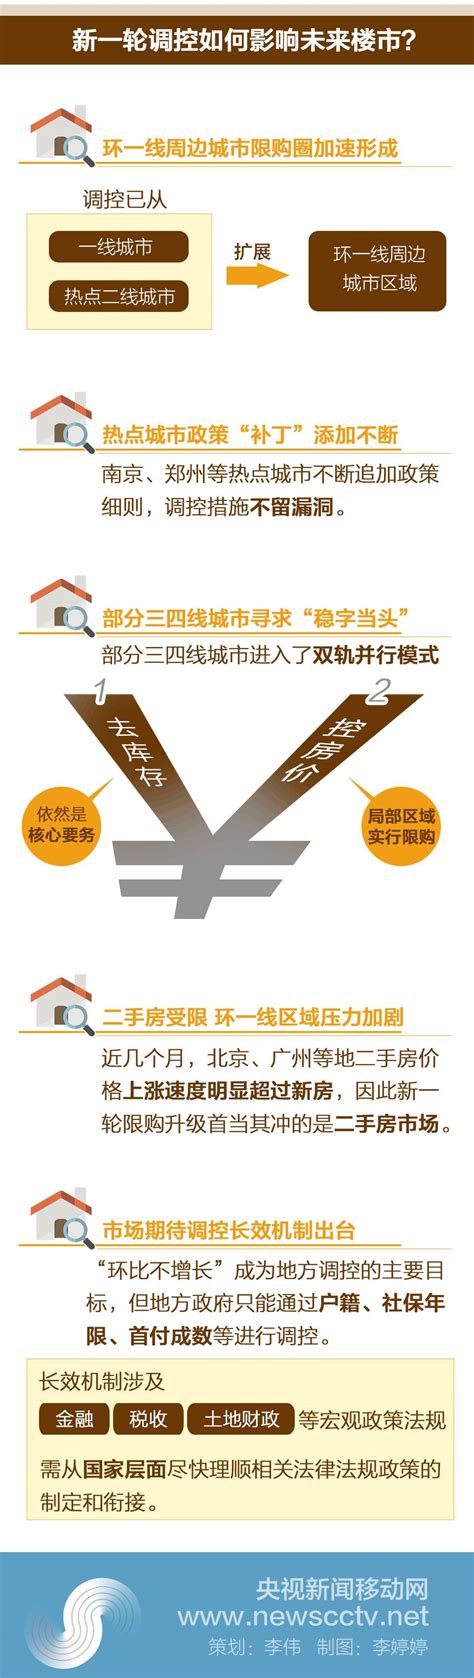 福州限购令出炉 二套房商贷首付不得低于五成（2）_福州新闻_海峡网